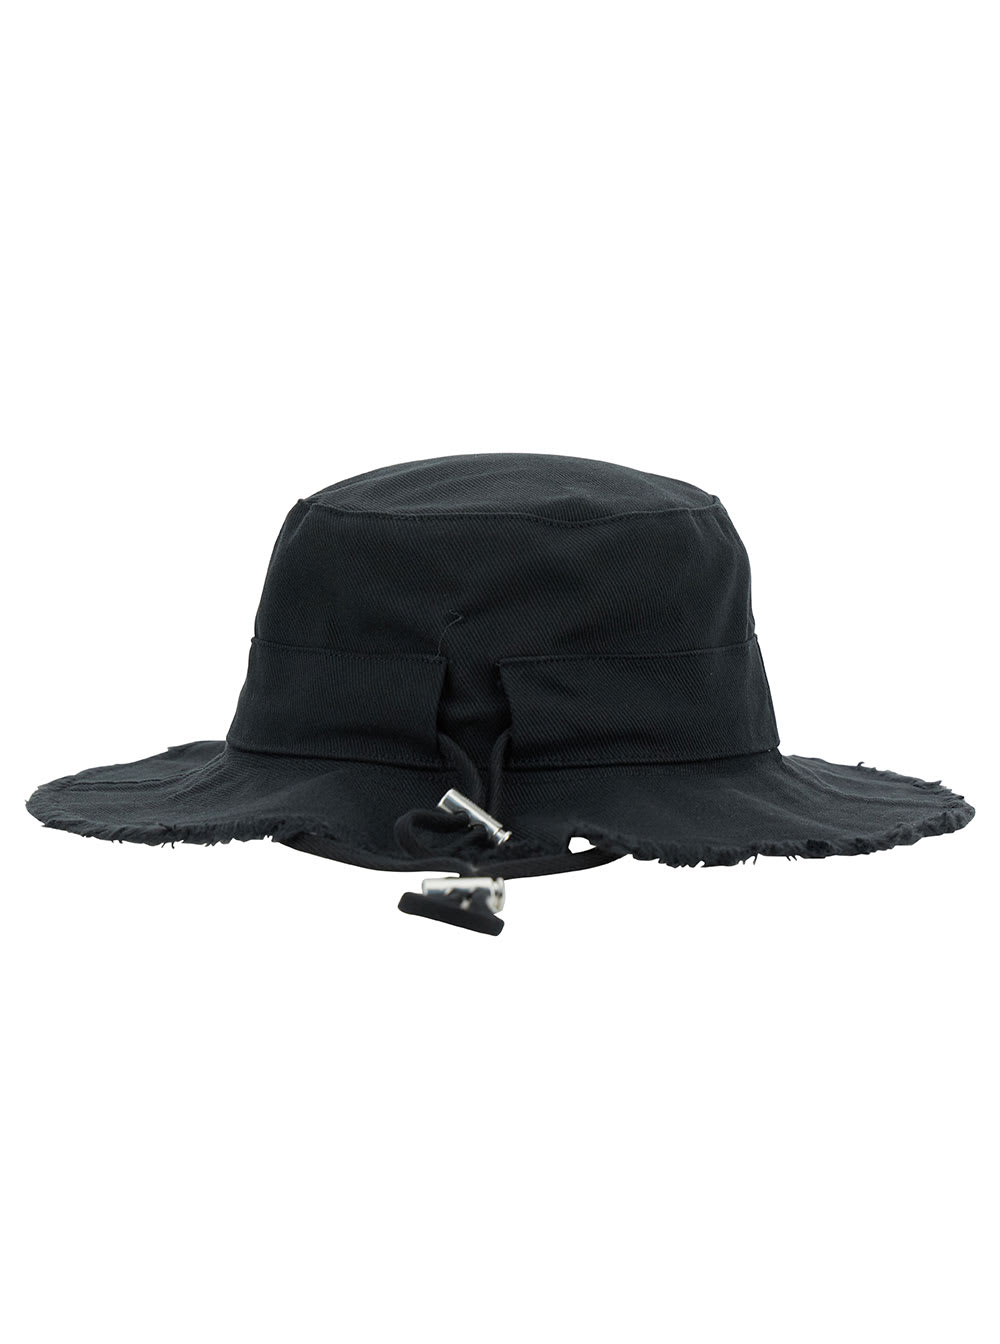 Shop Jacquemus Le Bob Artichaut Black Hat With Metal Logo In Canvas Man